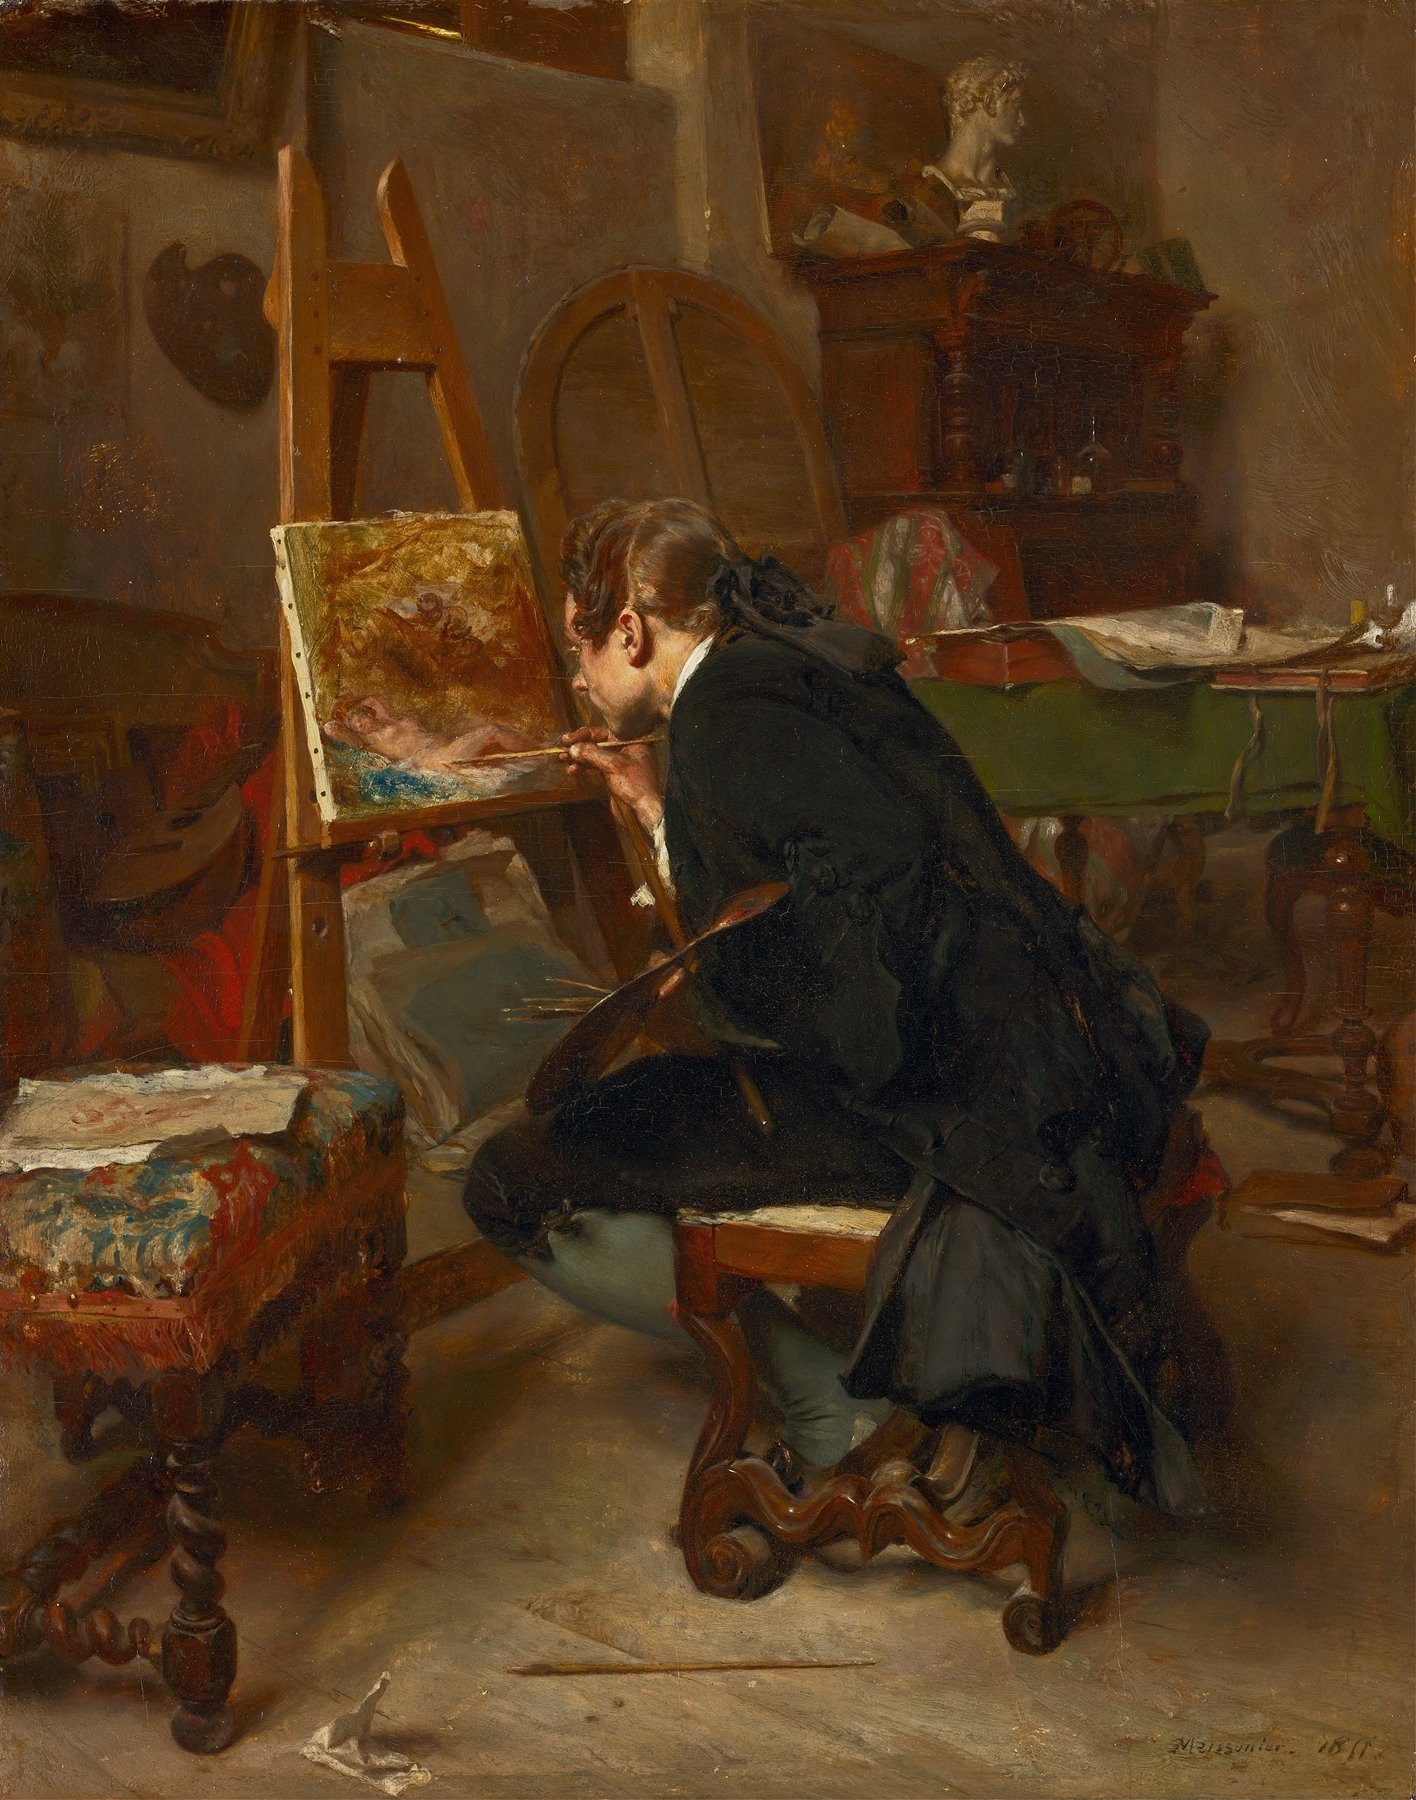 A Painter (1855)